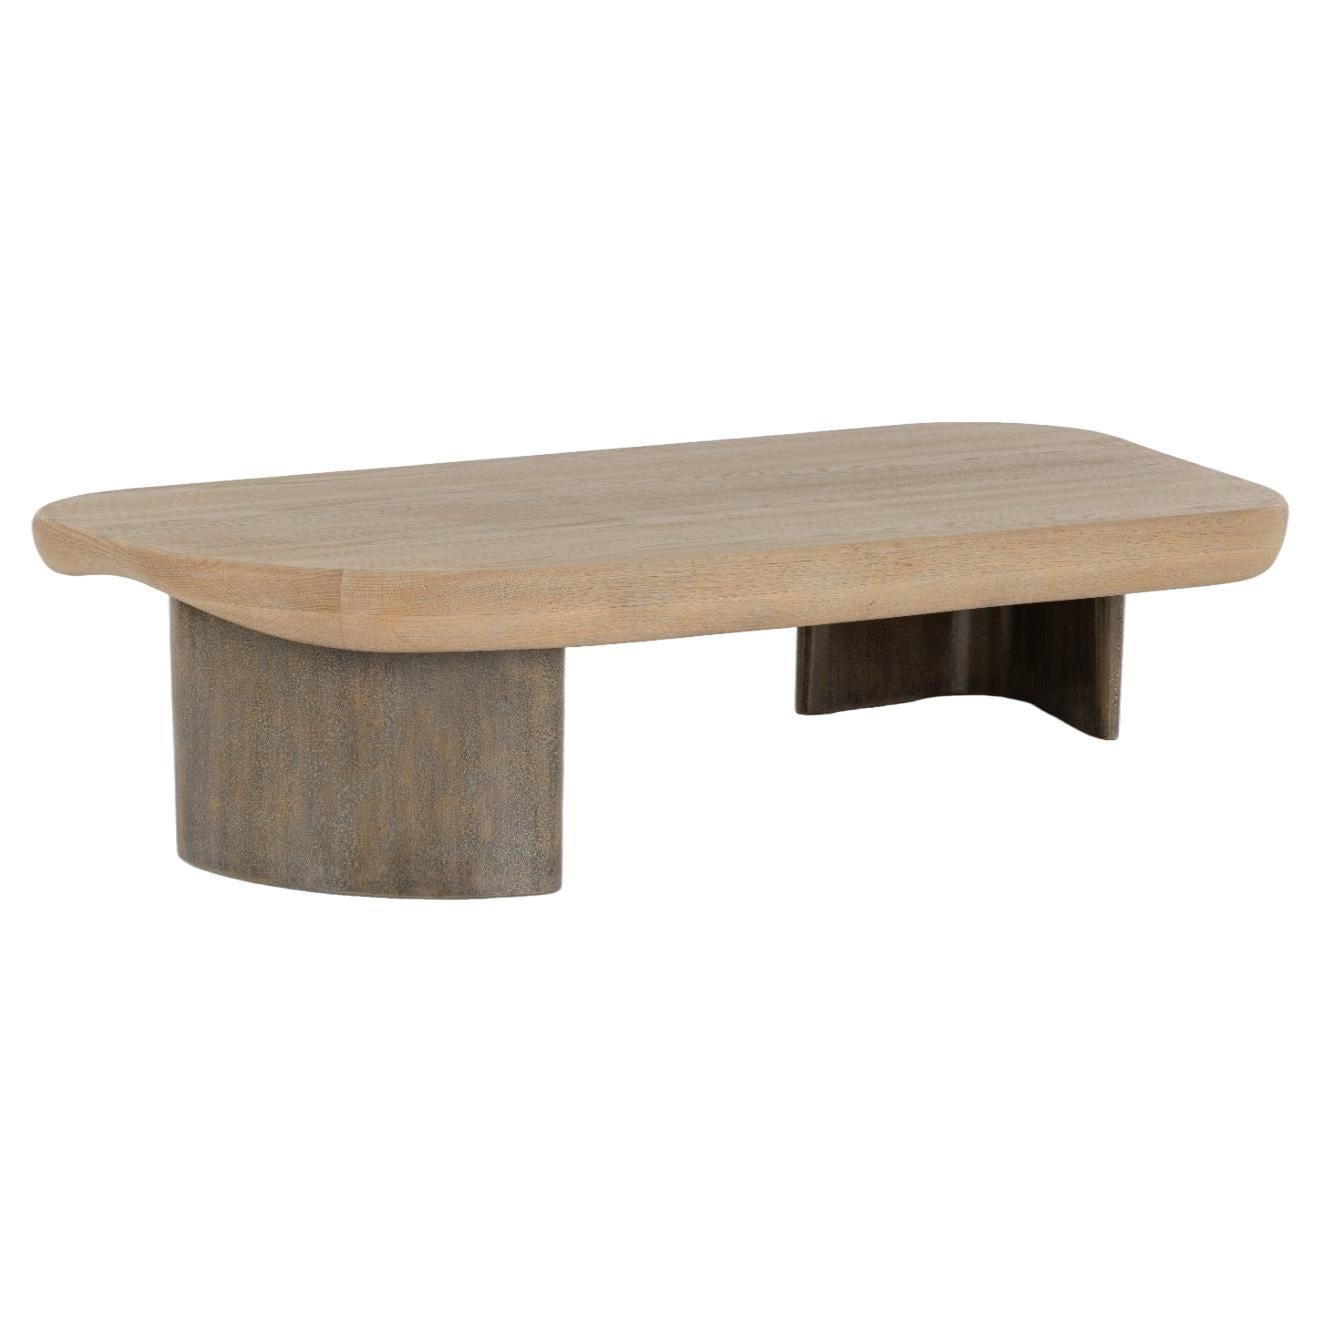  Table basse, plateau en chêne, base en bois laqué texturé faite à la main, océan en vente